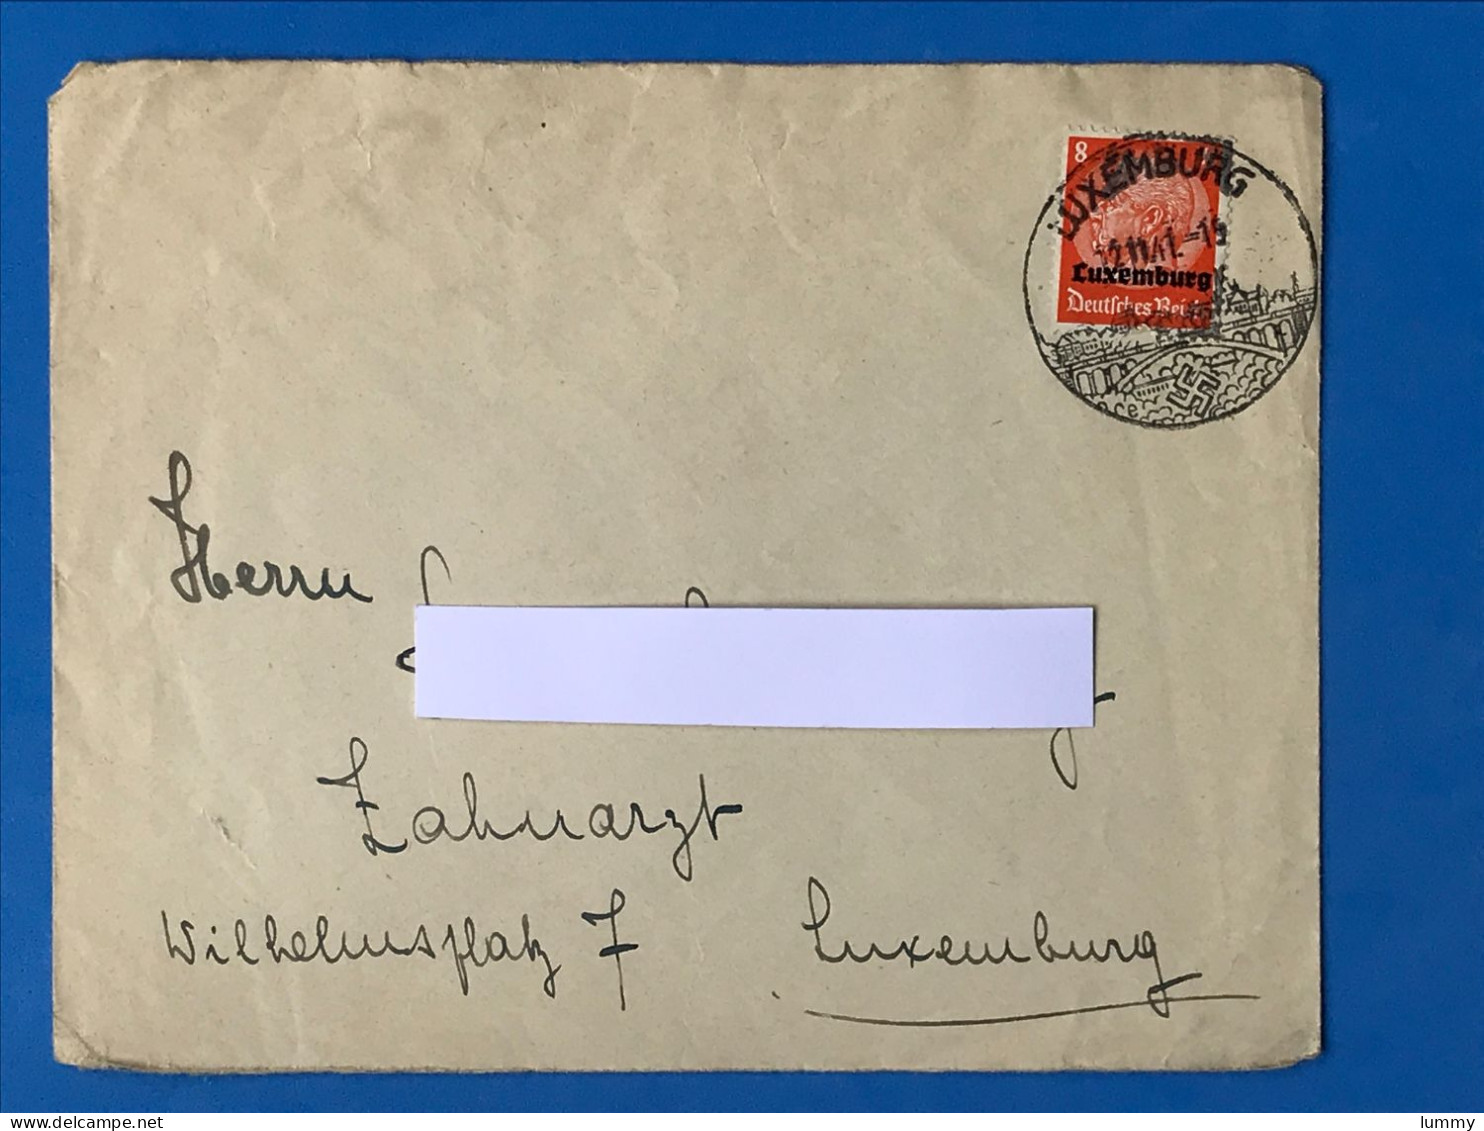 Luxembourg - Enveloppe - Deutsches Reich - 12.11.41 -  Luxemburg Wk2 Ww2 Besatzung Militaria - 1940-1944 Duitse Bezetting